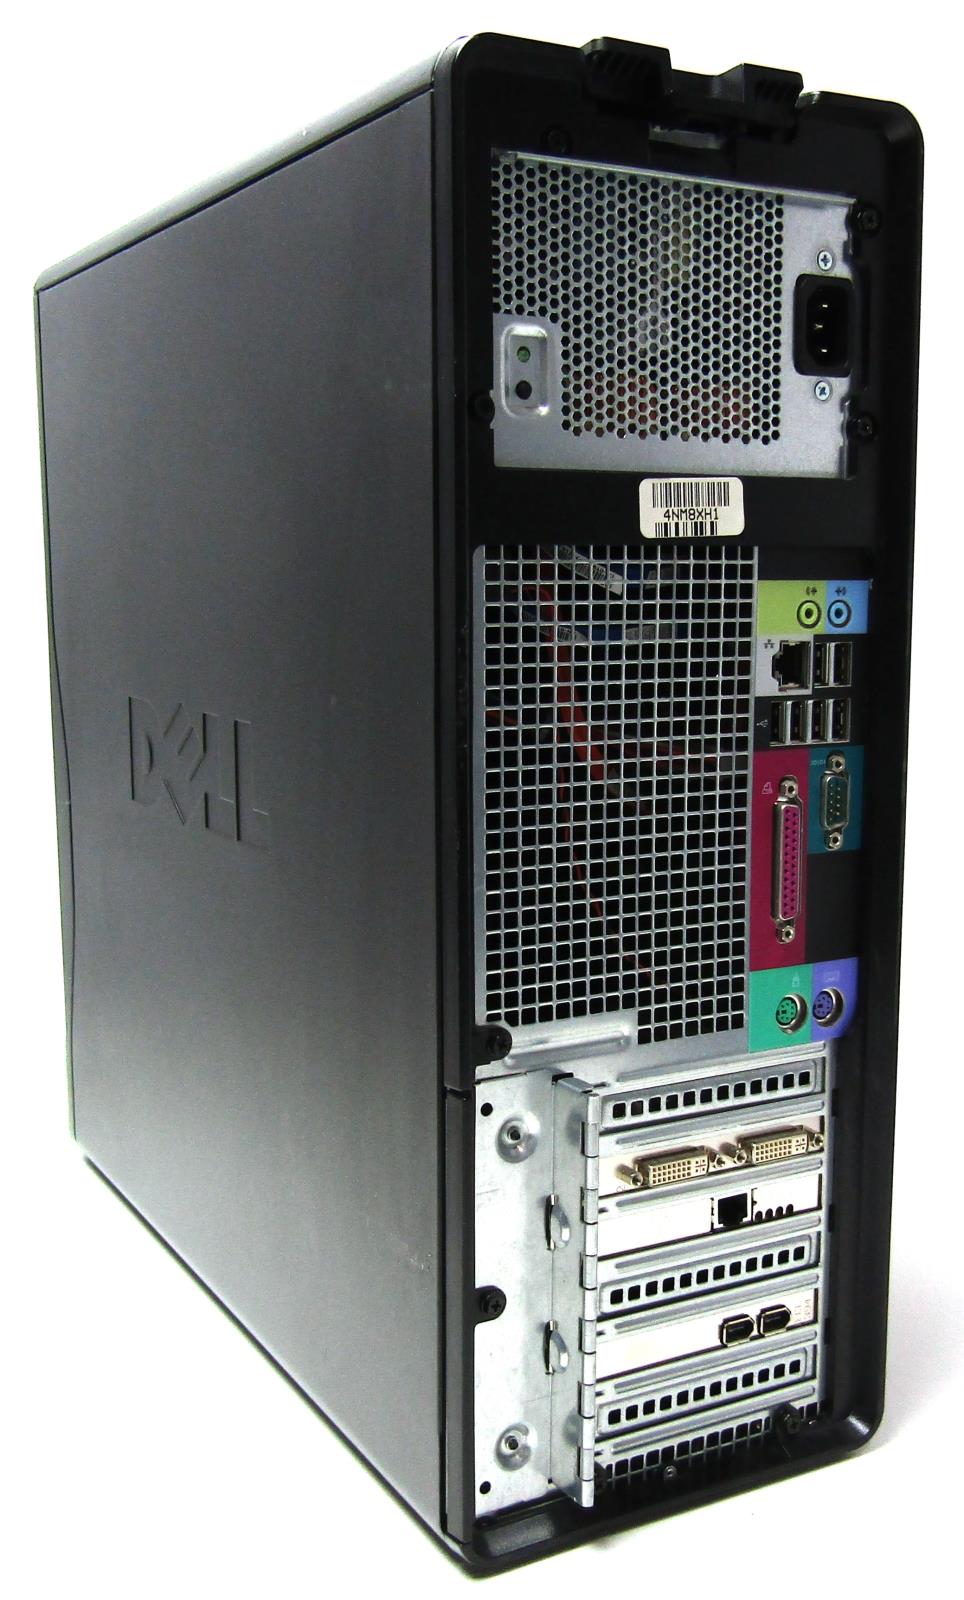 メモリ 1GB Upgrade for a Dell Dimension 9150 System (DDR2 PC2-5300